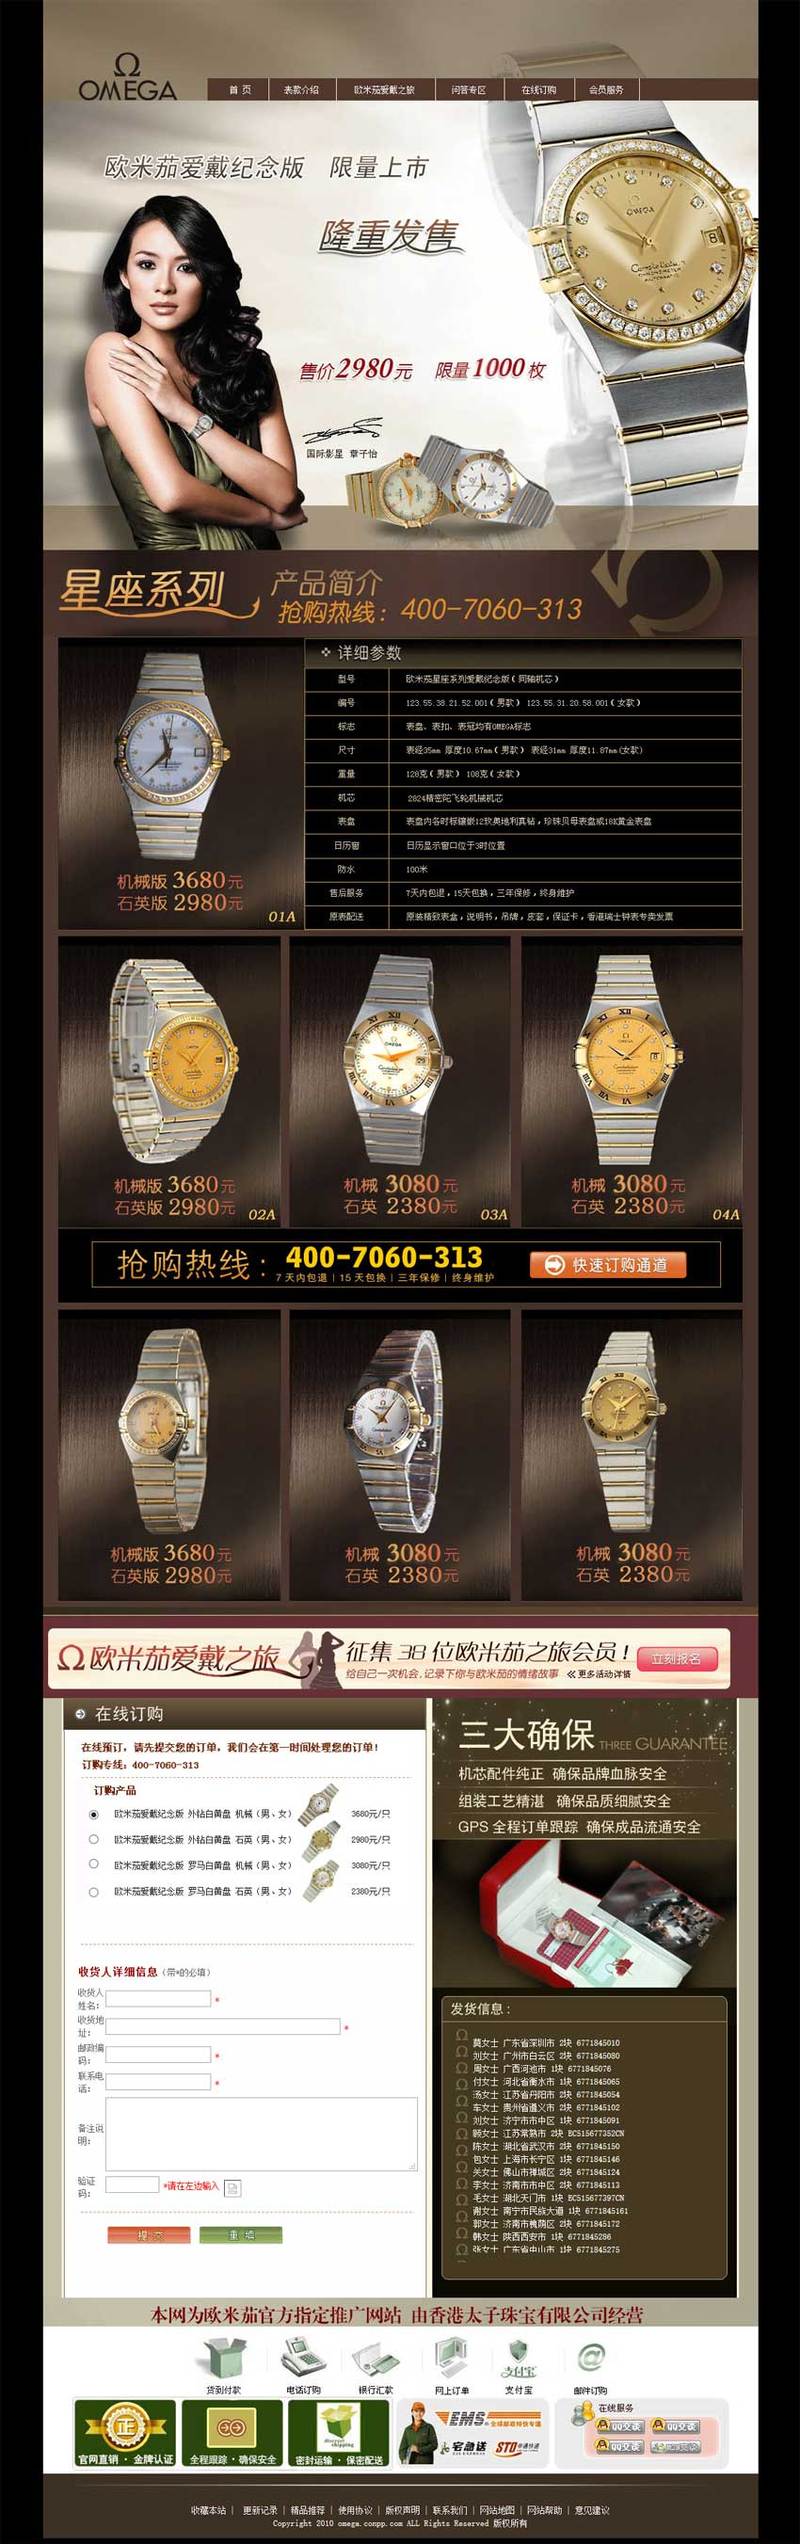 手表专卖店网站棕色风格的模板下载